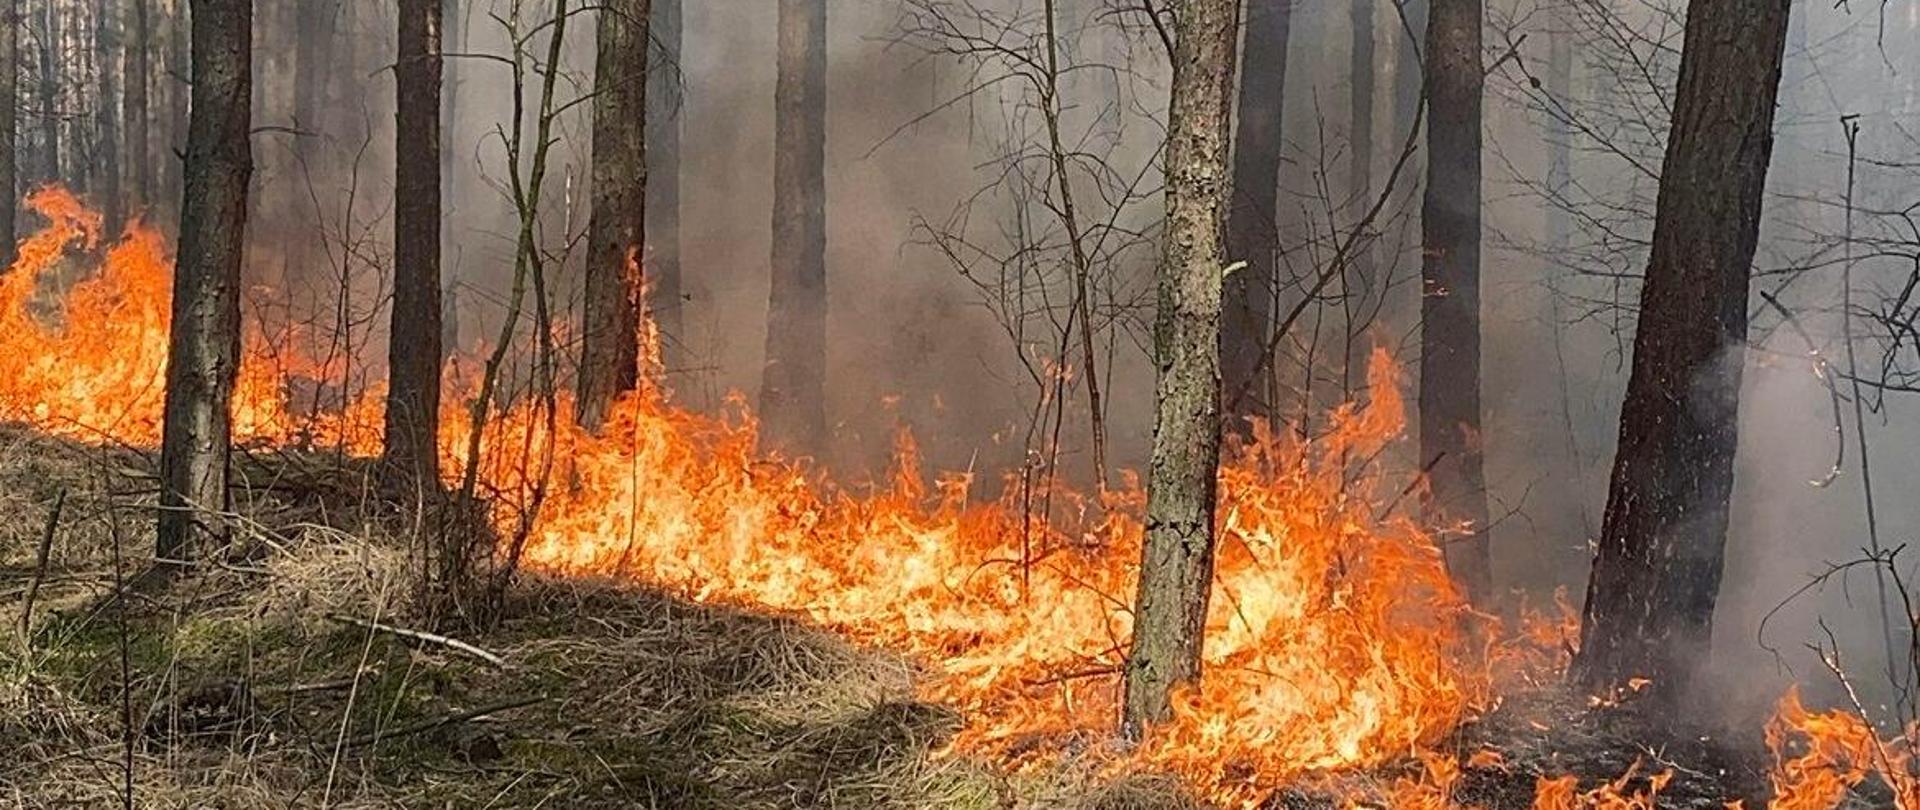 Zagrożenie pożarowe w lasach - apelujemy o ostrożność!